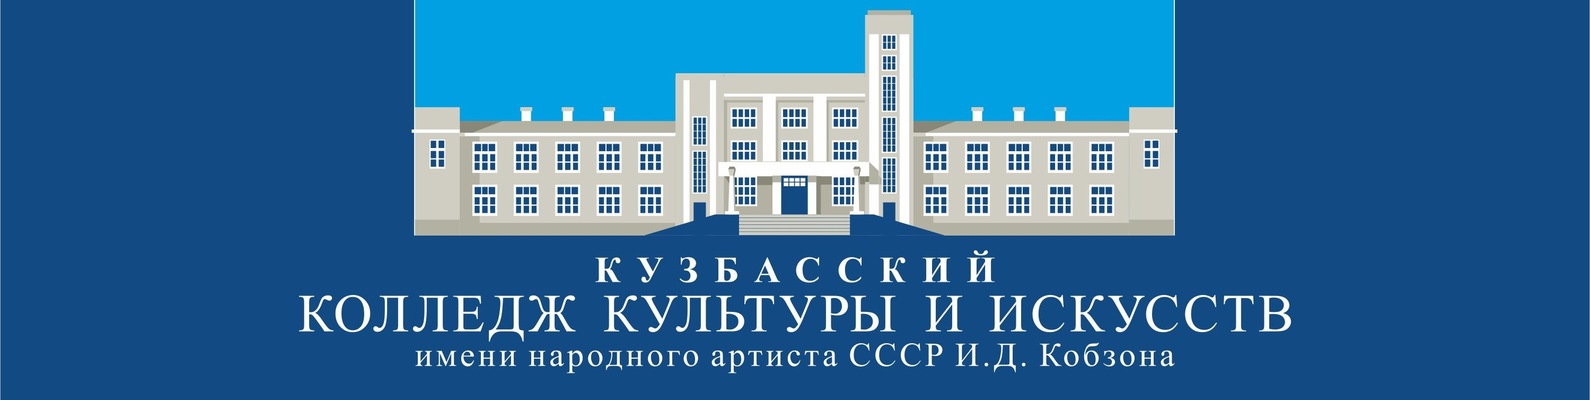 Логотип (Кузбасский колледж культуры и искусств» имени народного артиста СССР И.Д. Кобзона)